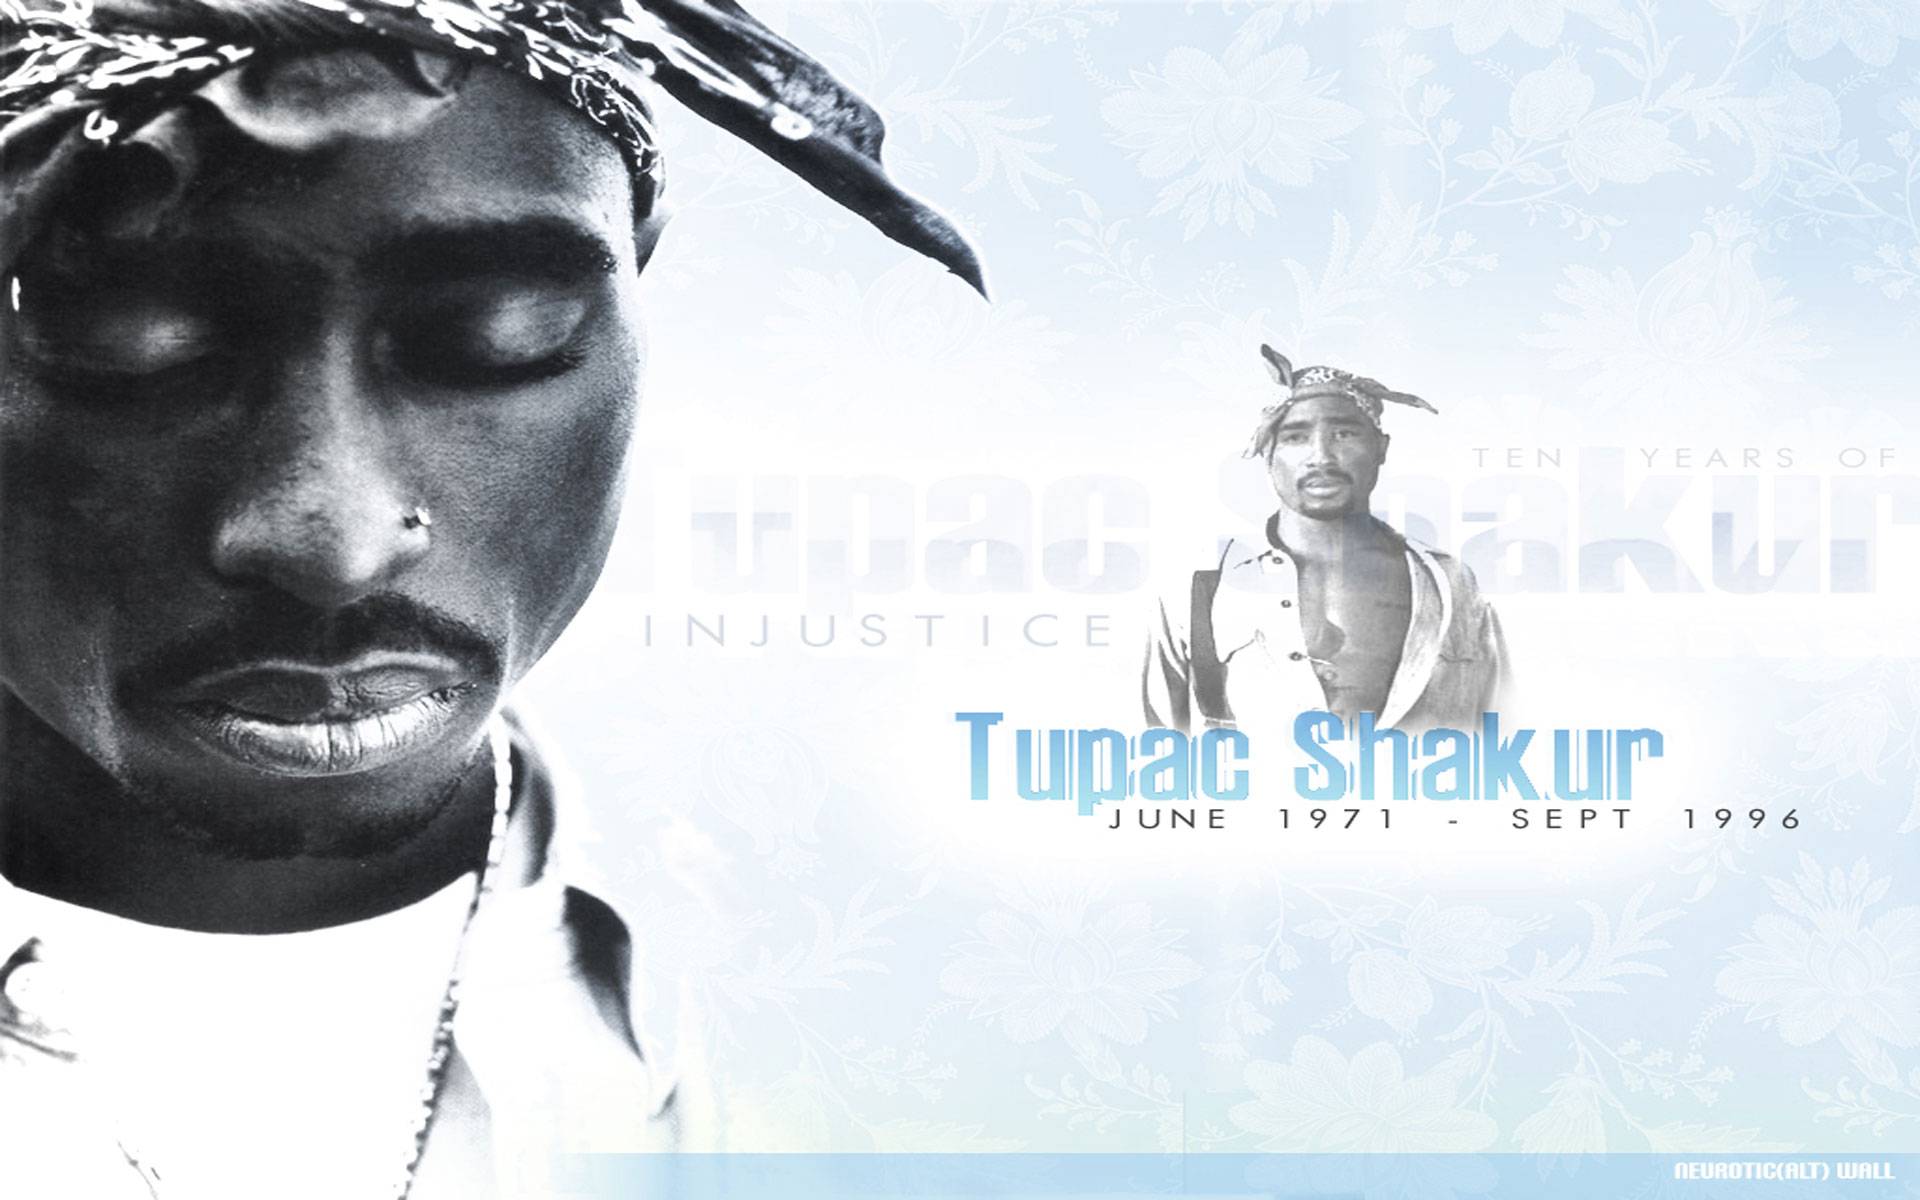 Tupac shakur wallpaper 10 years of injustice june 1971 - sept 1996 - Tupac